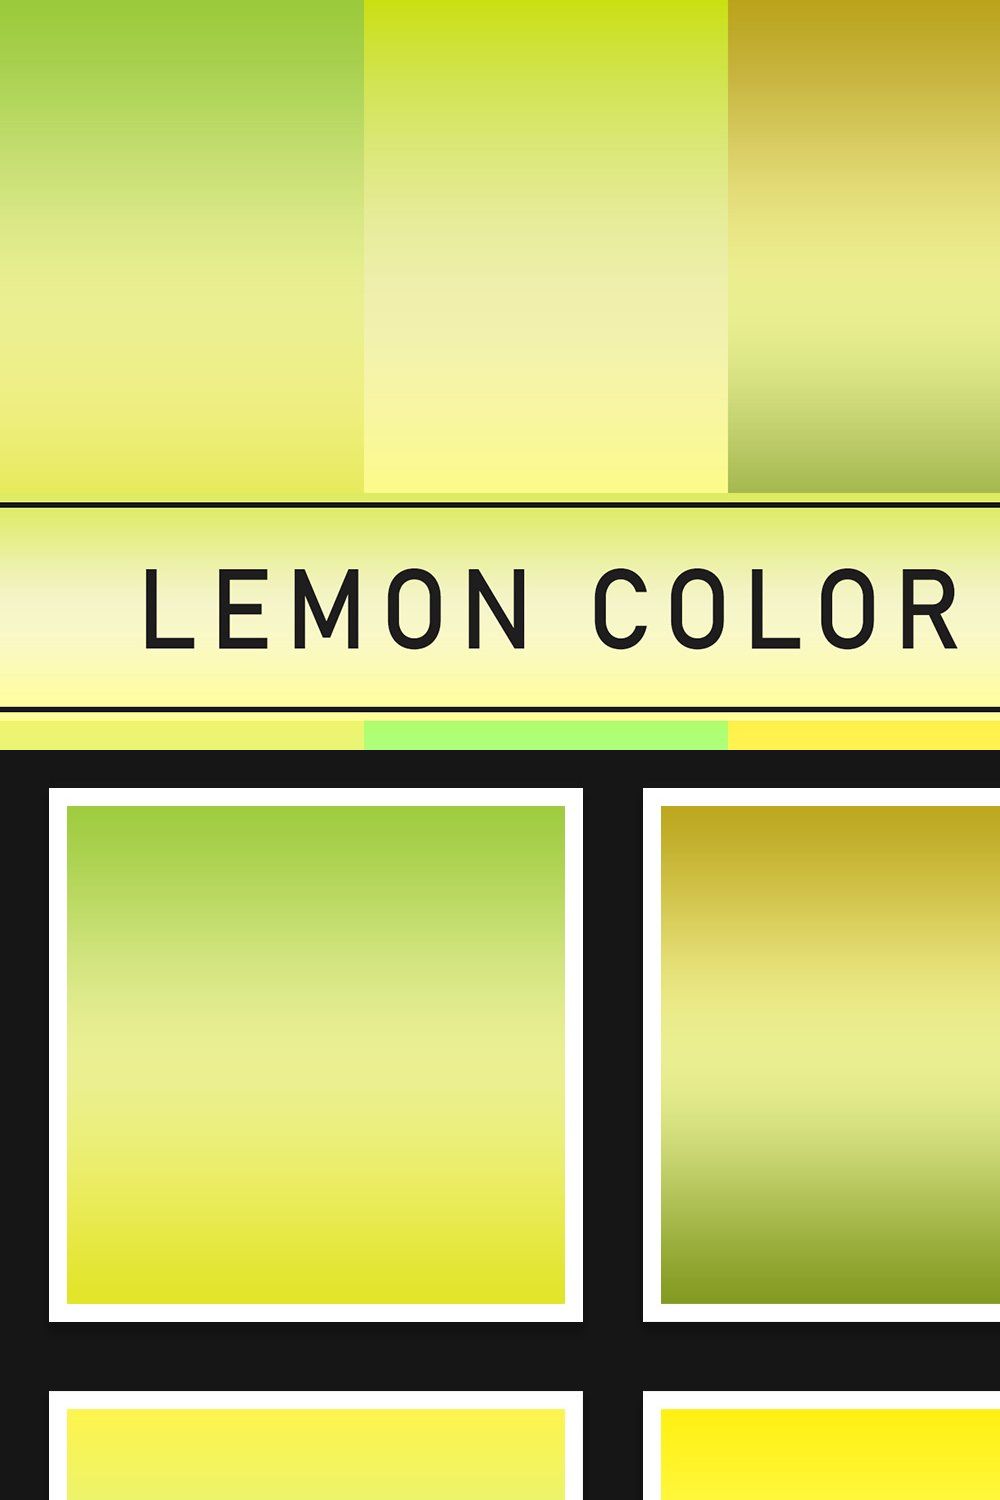 Lemon Color Gradients pinterest preview image.